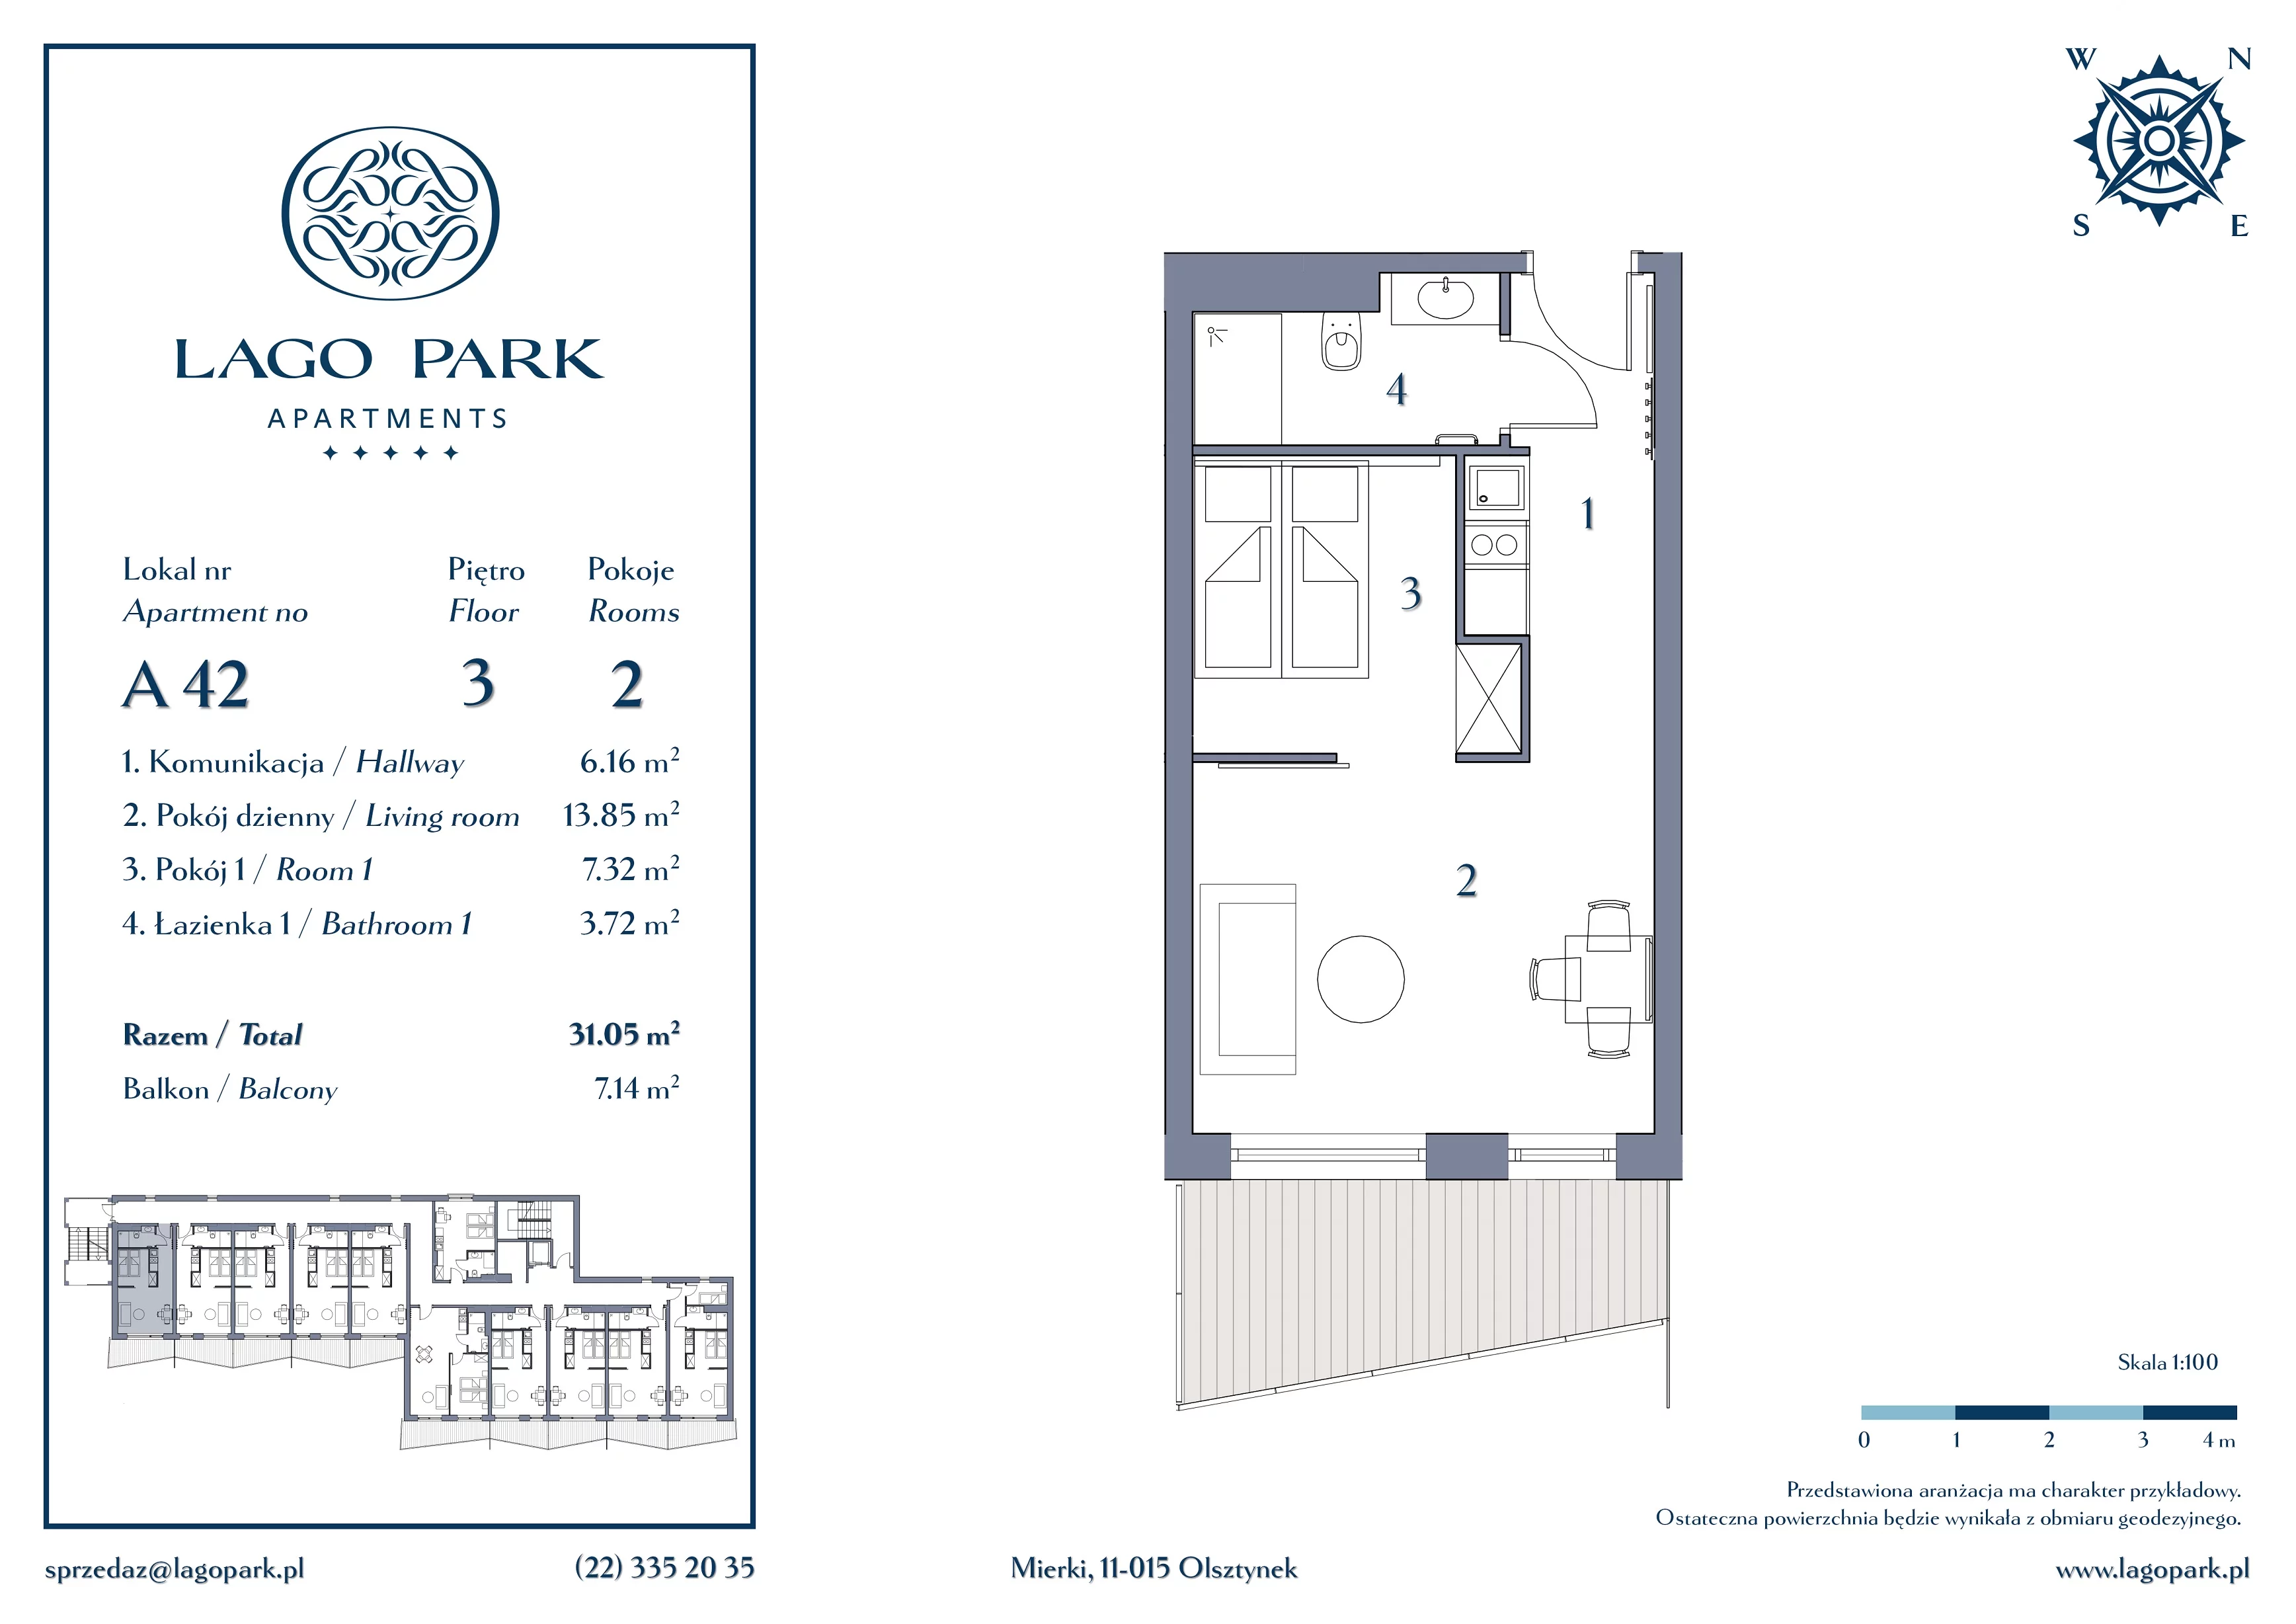 Apartament inwestycyjny 31,05 m², piętro 3, oferta nr A42, Lago Park Apartments by Aries, Mierki, Kołatek 2